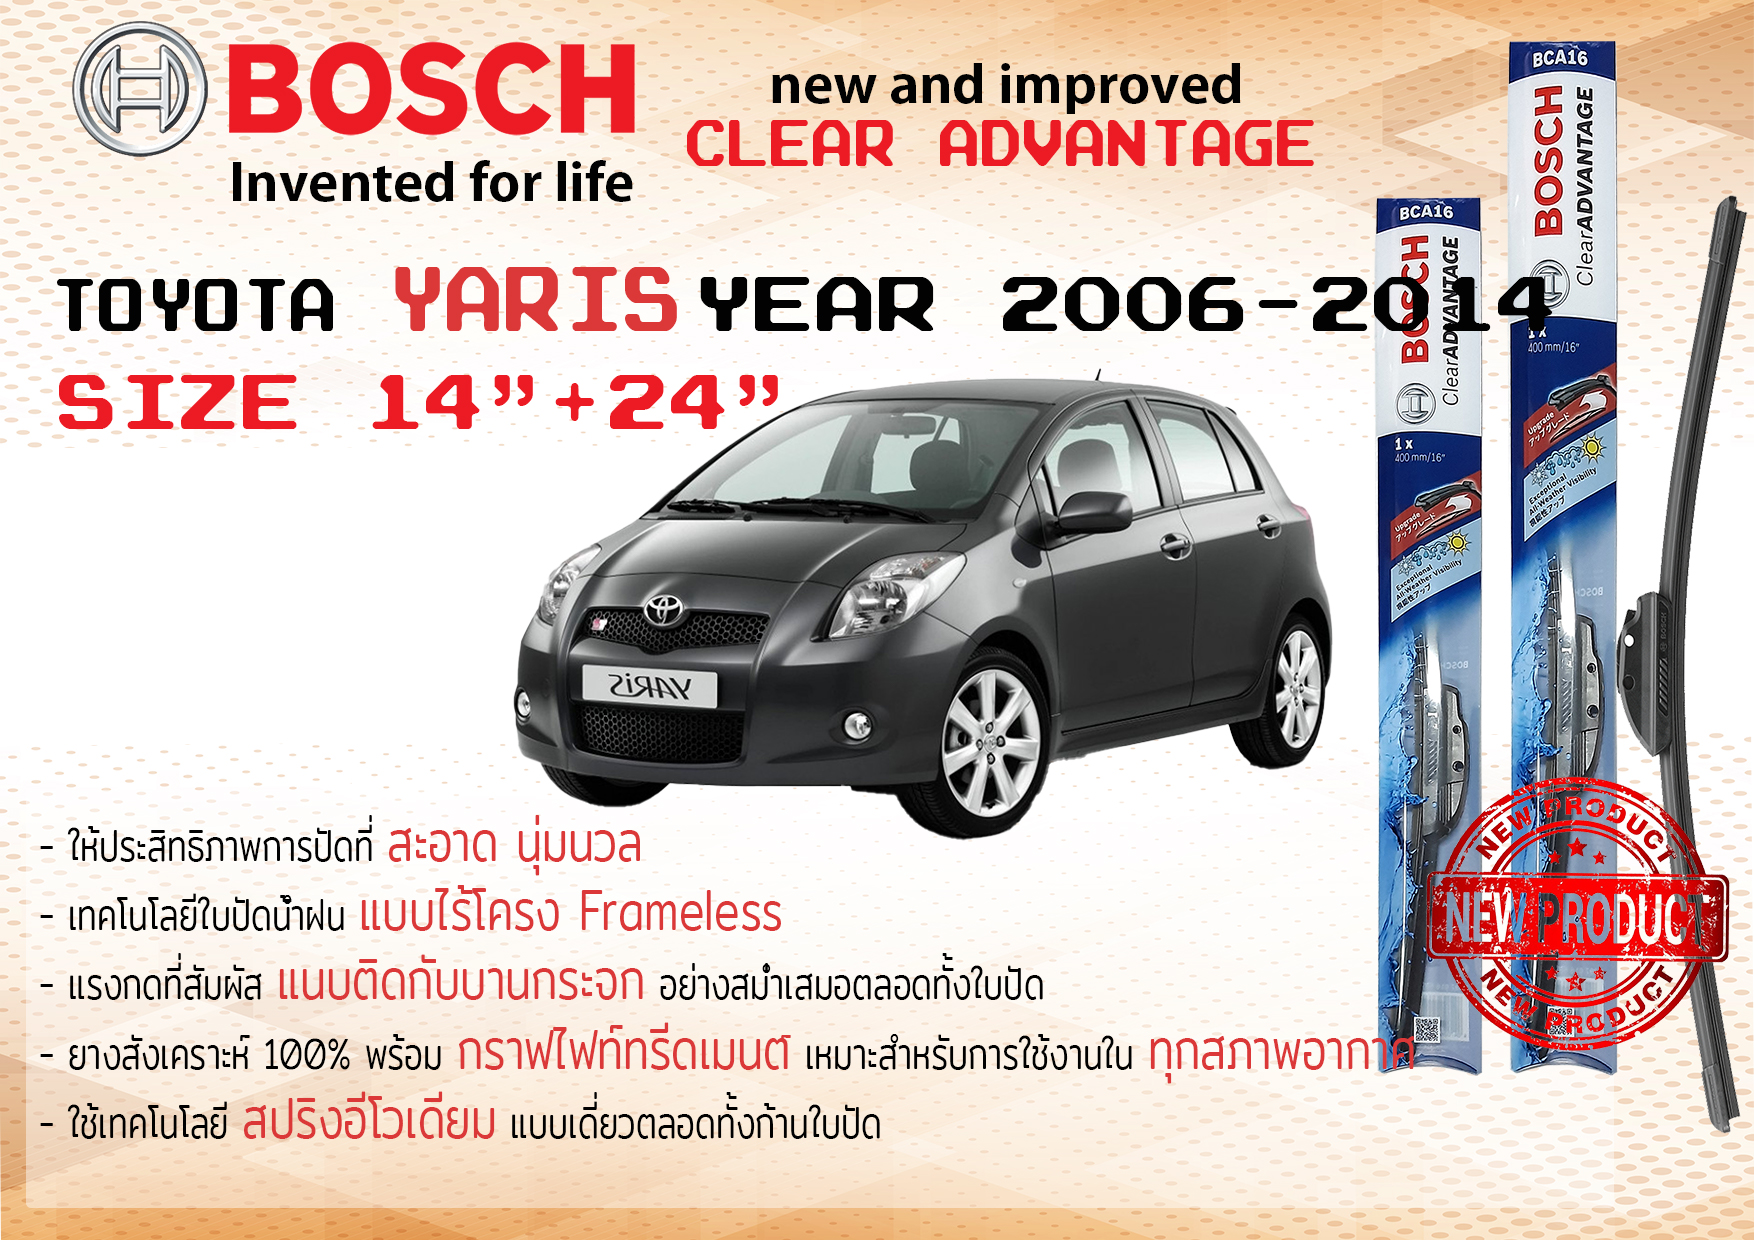 ใบปัดน้ำฝน คู่หน้า Bosch Clear Advantage frameless ก้านอ่อน ขนาด 14”+24” สำหรับรถ Toyota YARIS ปี 2006-2013 ปี 06,07,08,09,10,11,12,13 โตโยต้า โตโยตา ยาริส ยาริซ ทนแสง UV